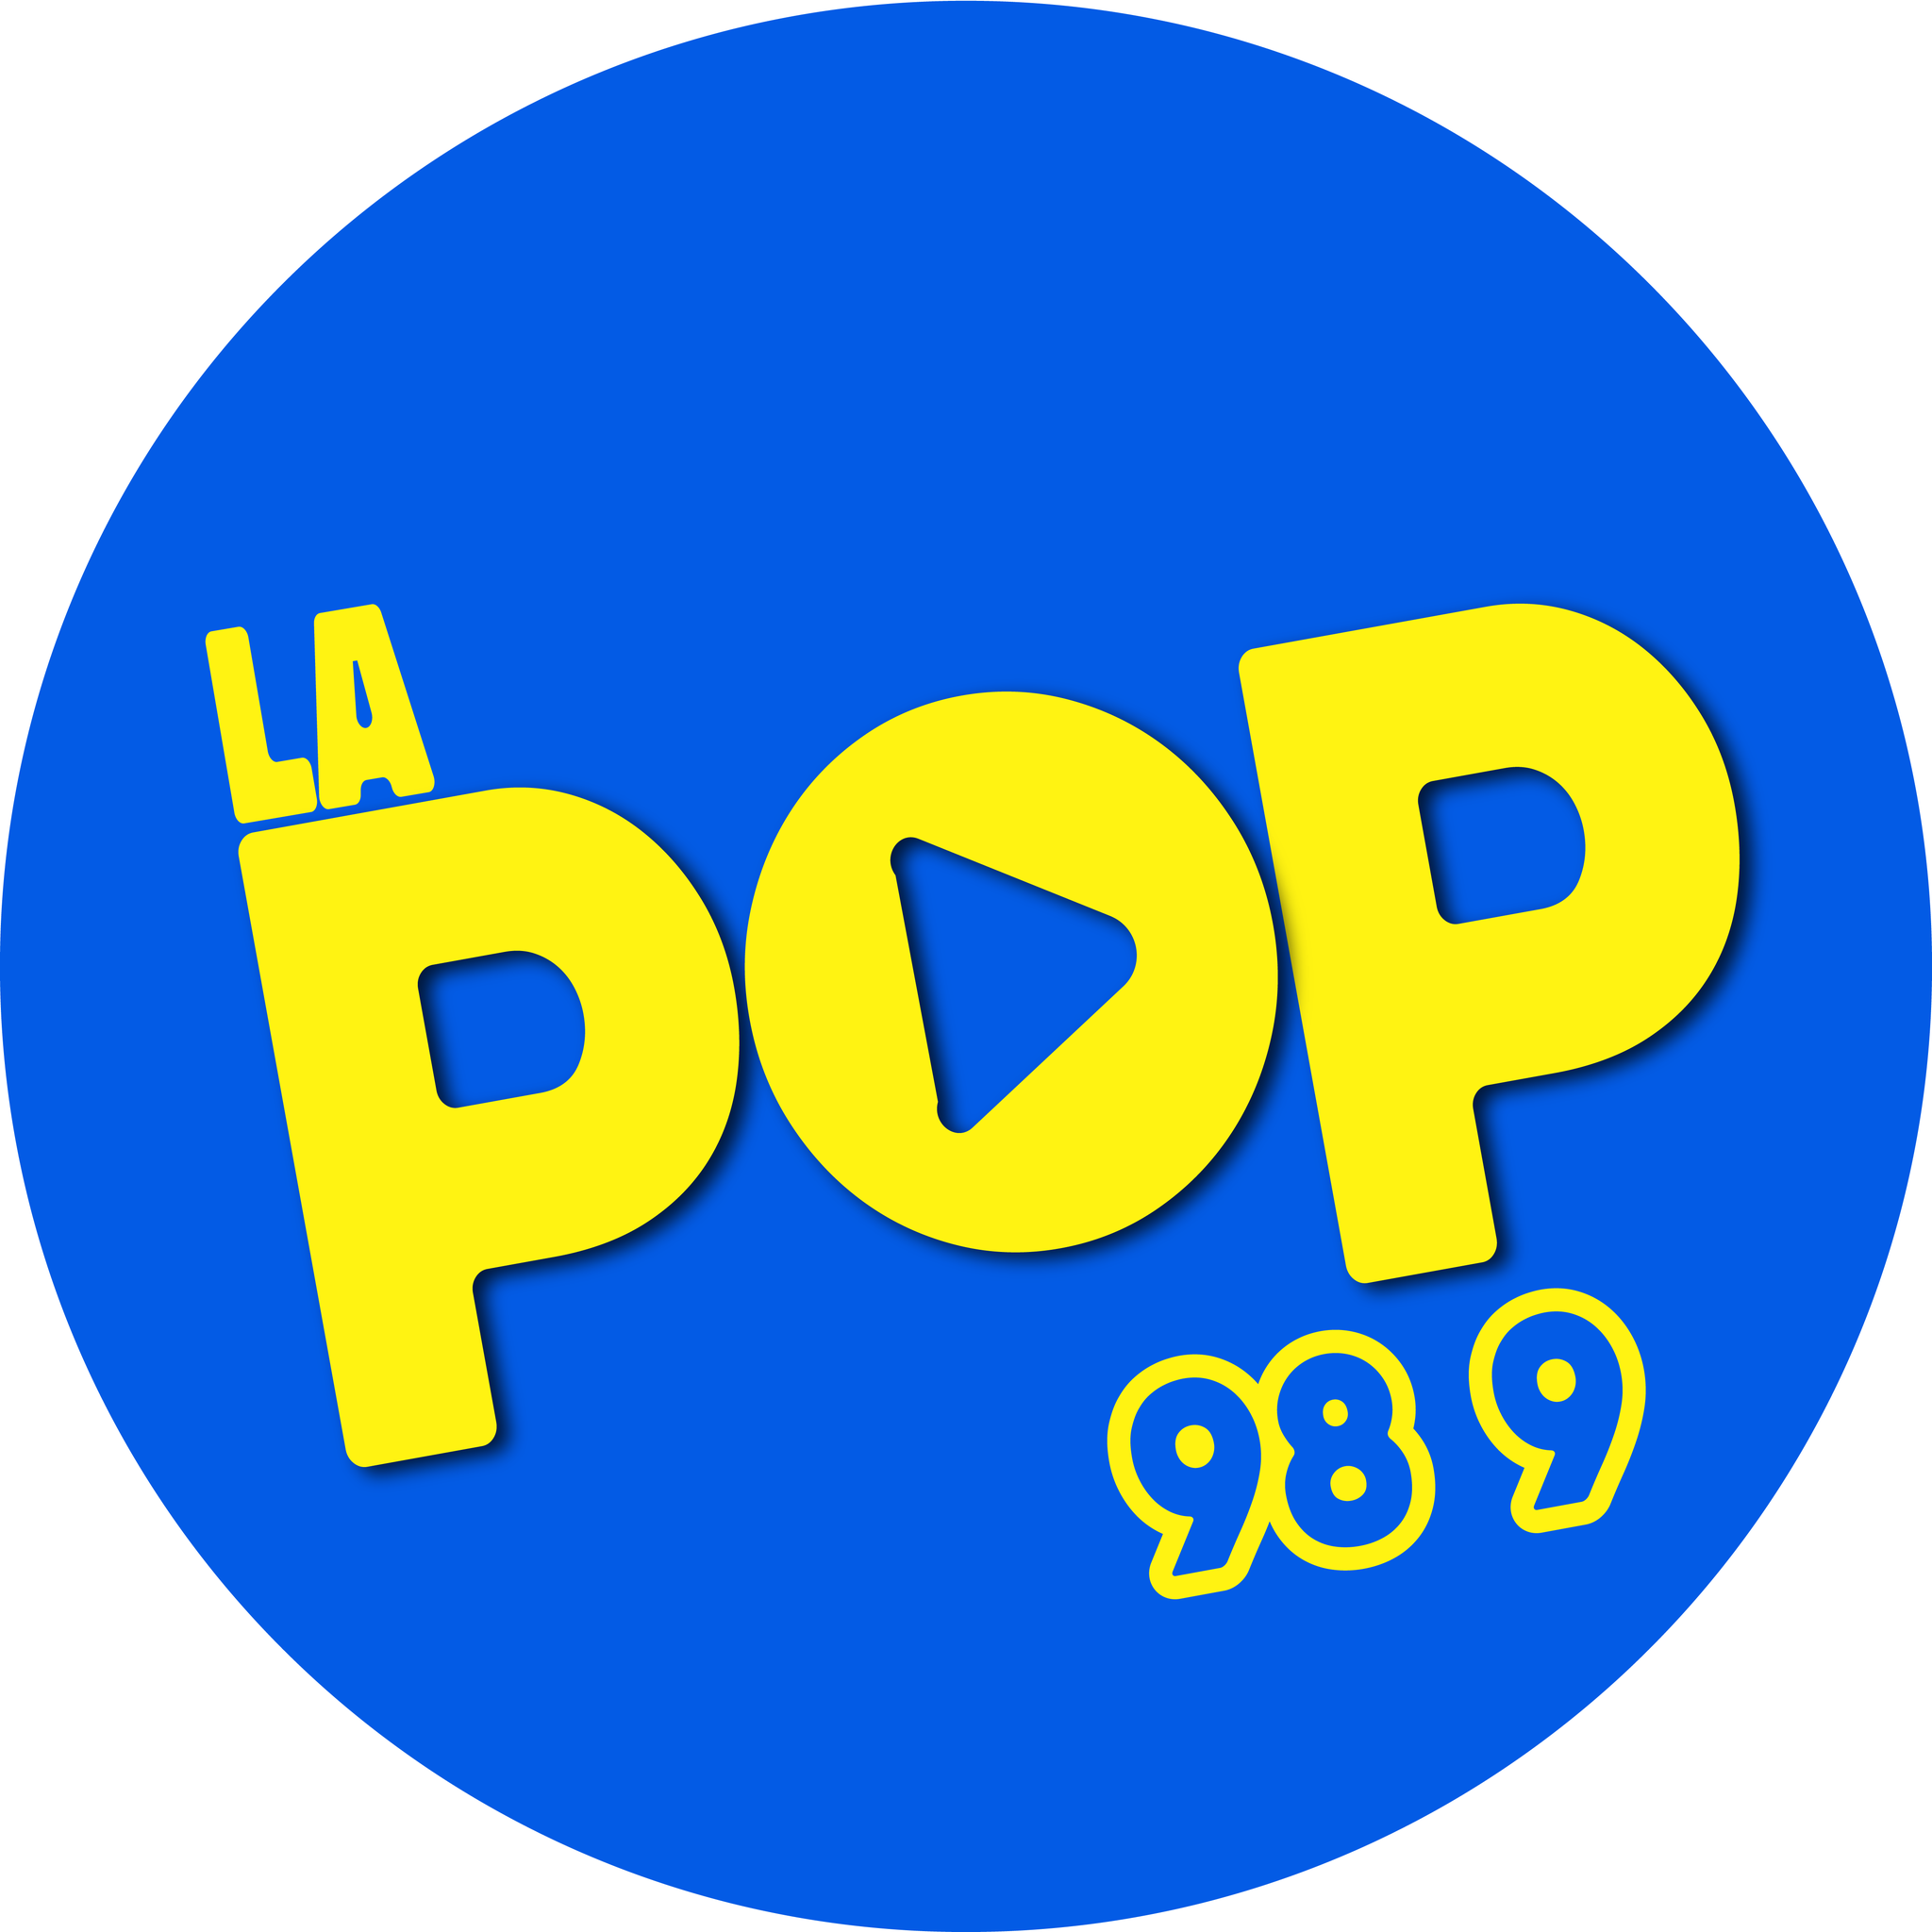 Pop Radio  FM San Salvador El Salvador - listen live radio